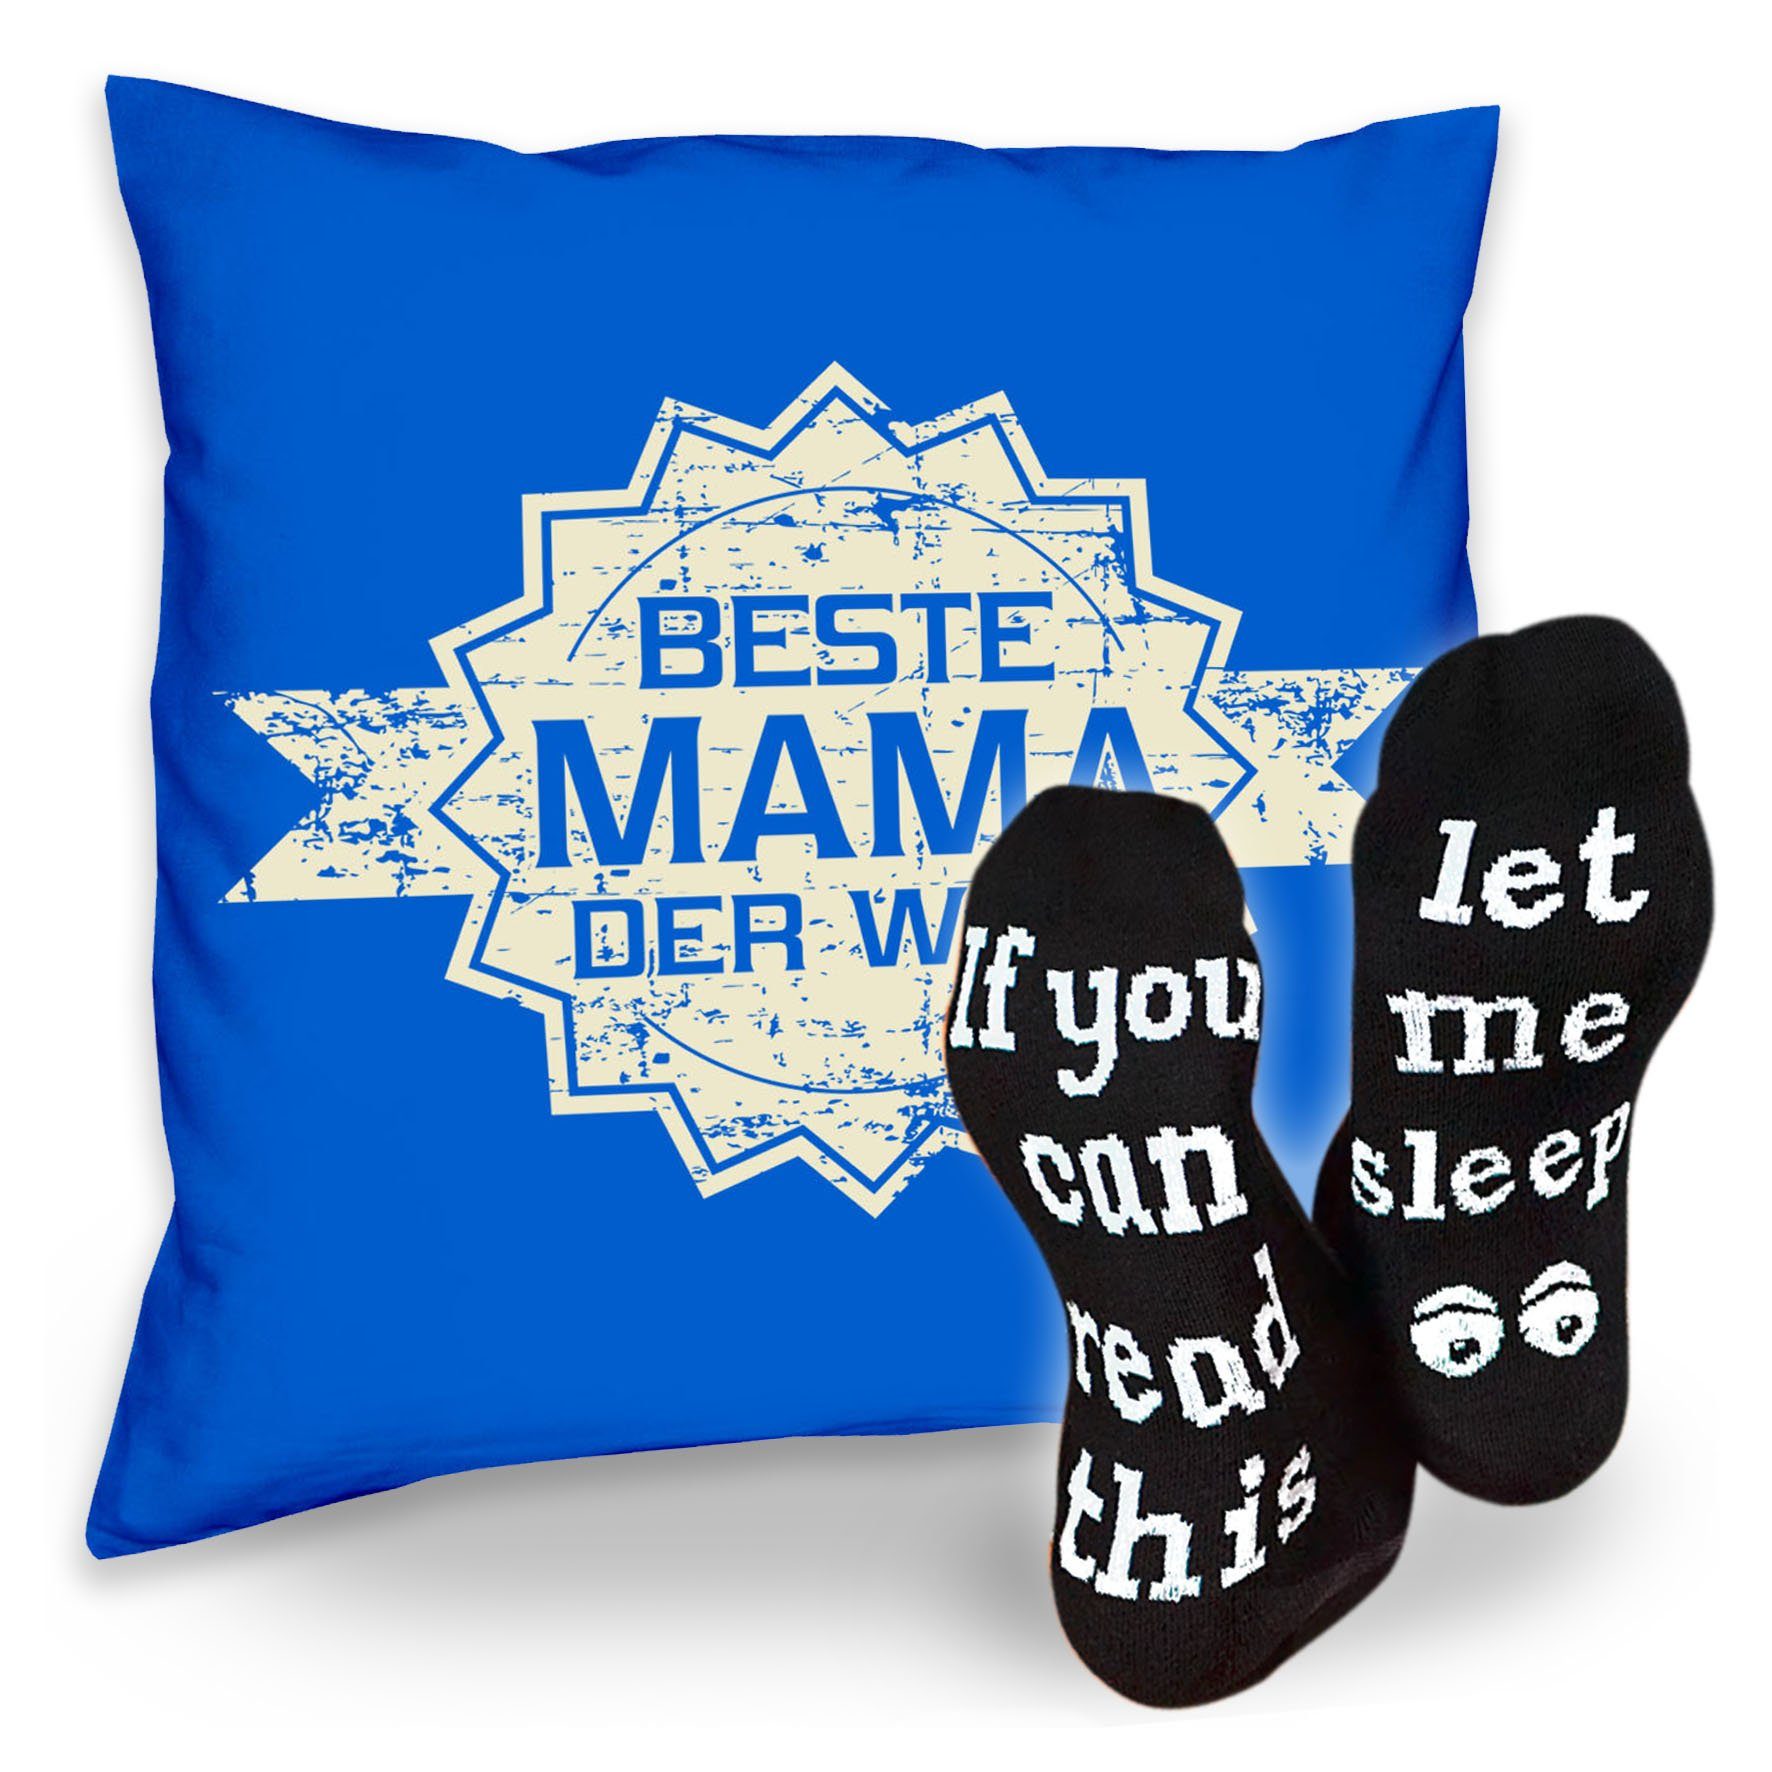 Kissen Muttertagsgeschenk & Stern Soreso® der Socken Sleep, Mama royal-blau Beste Sprüche Mama Muttertag Welt Dekokissen